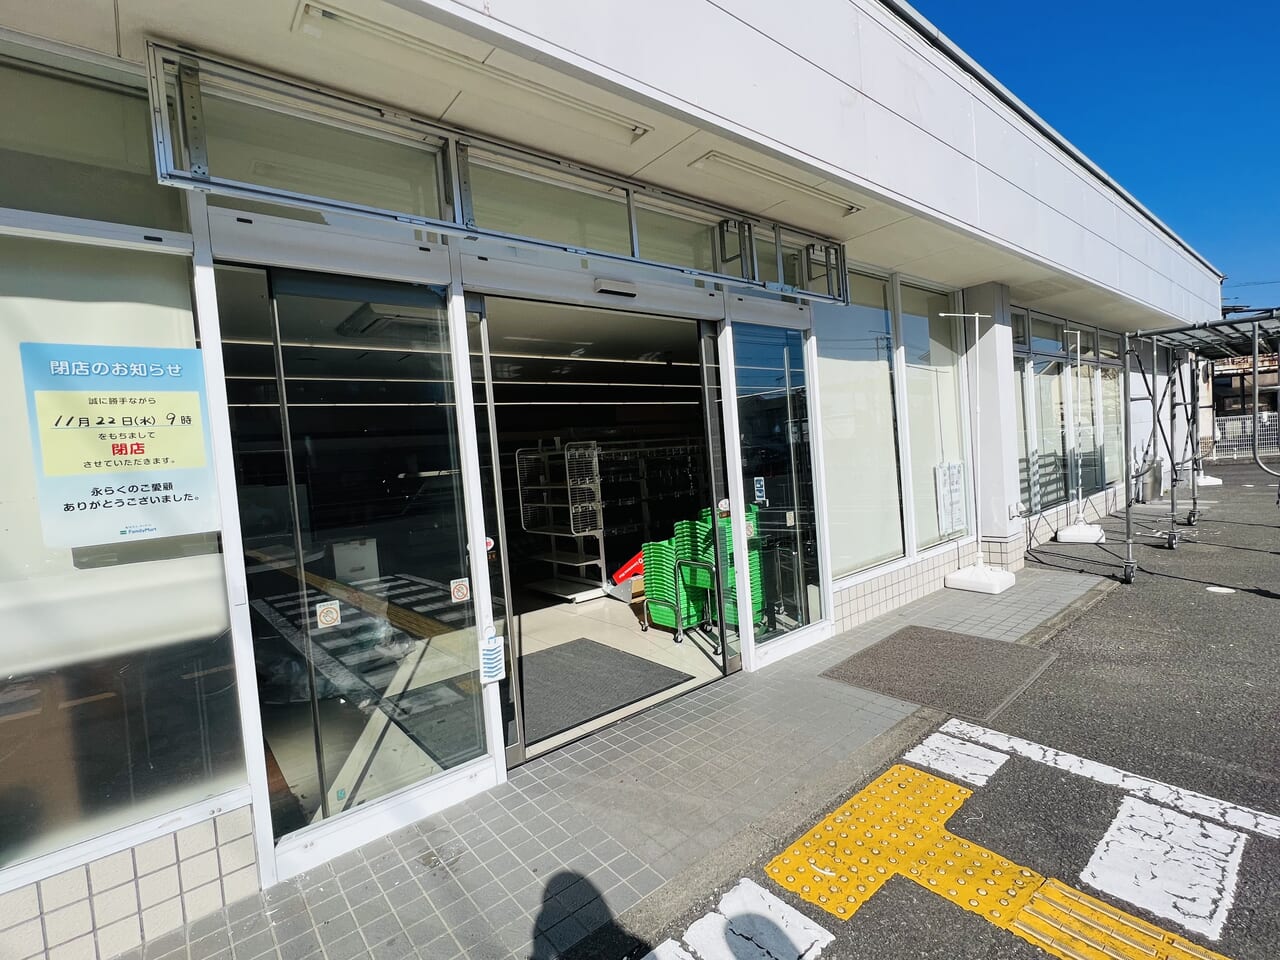 2023年11月22日に閉店した「ファミリーマート 高知福井東町店」の様子